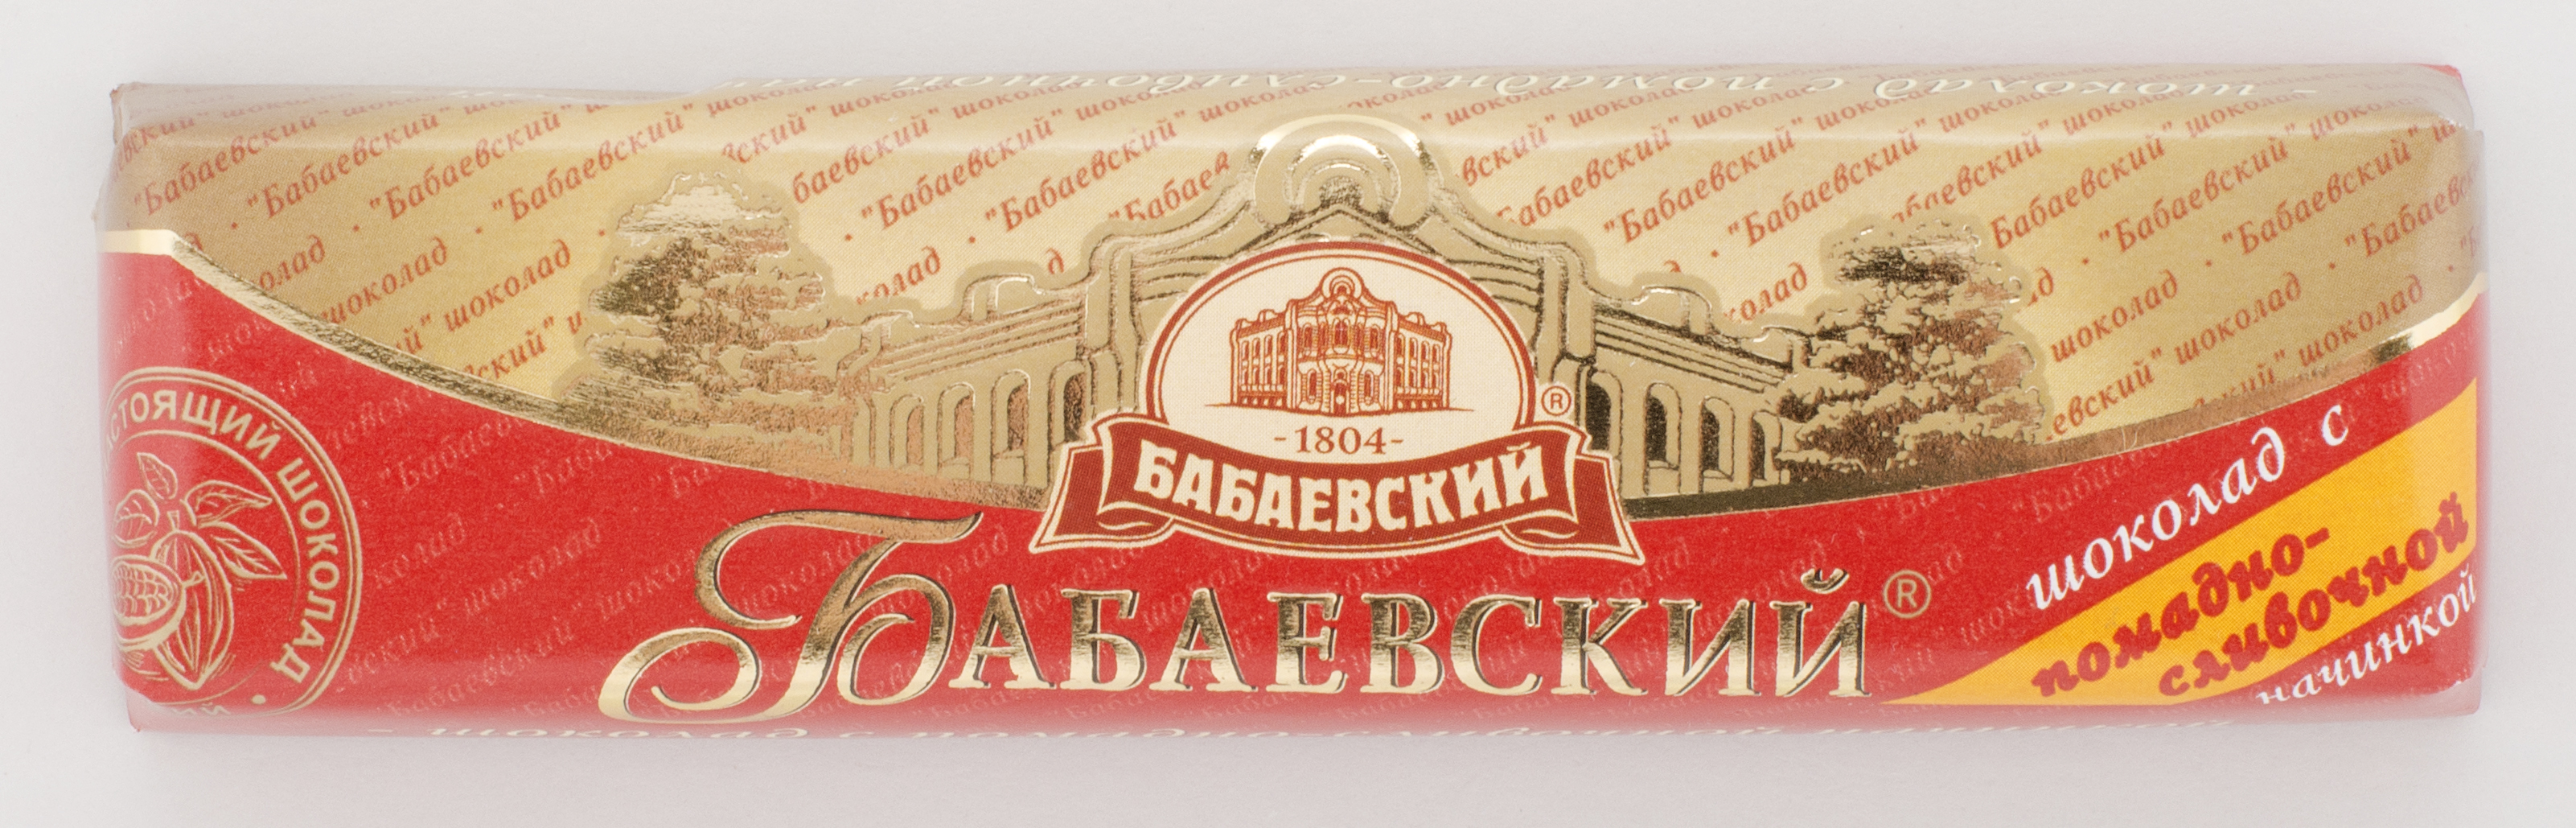 Батончик Бабаевский с помадно-сливочной начинкой 50 гр